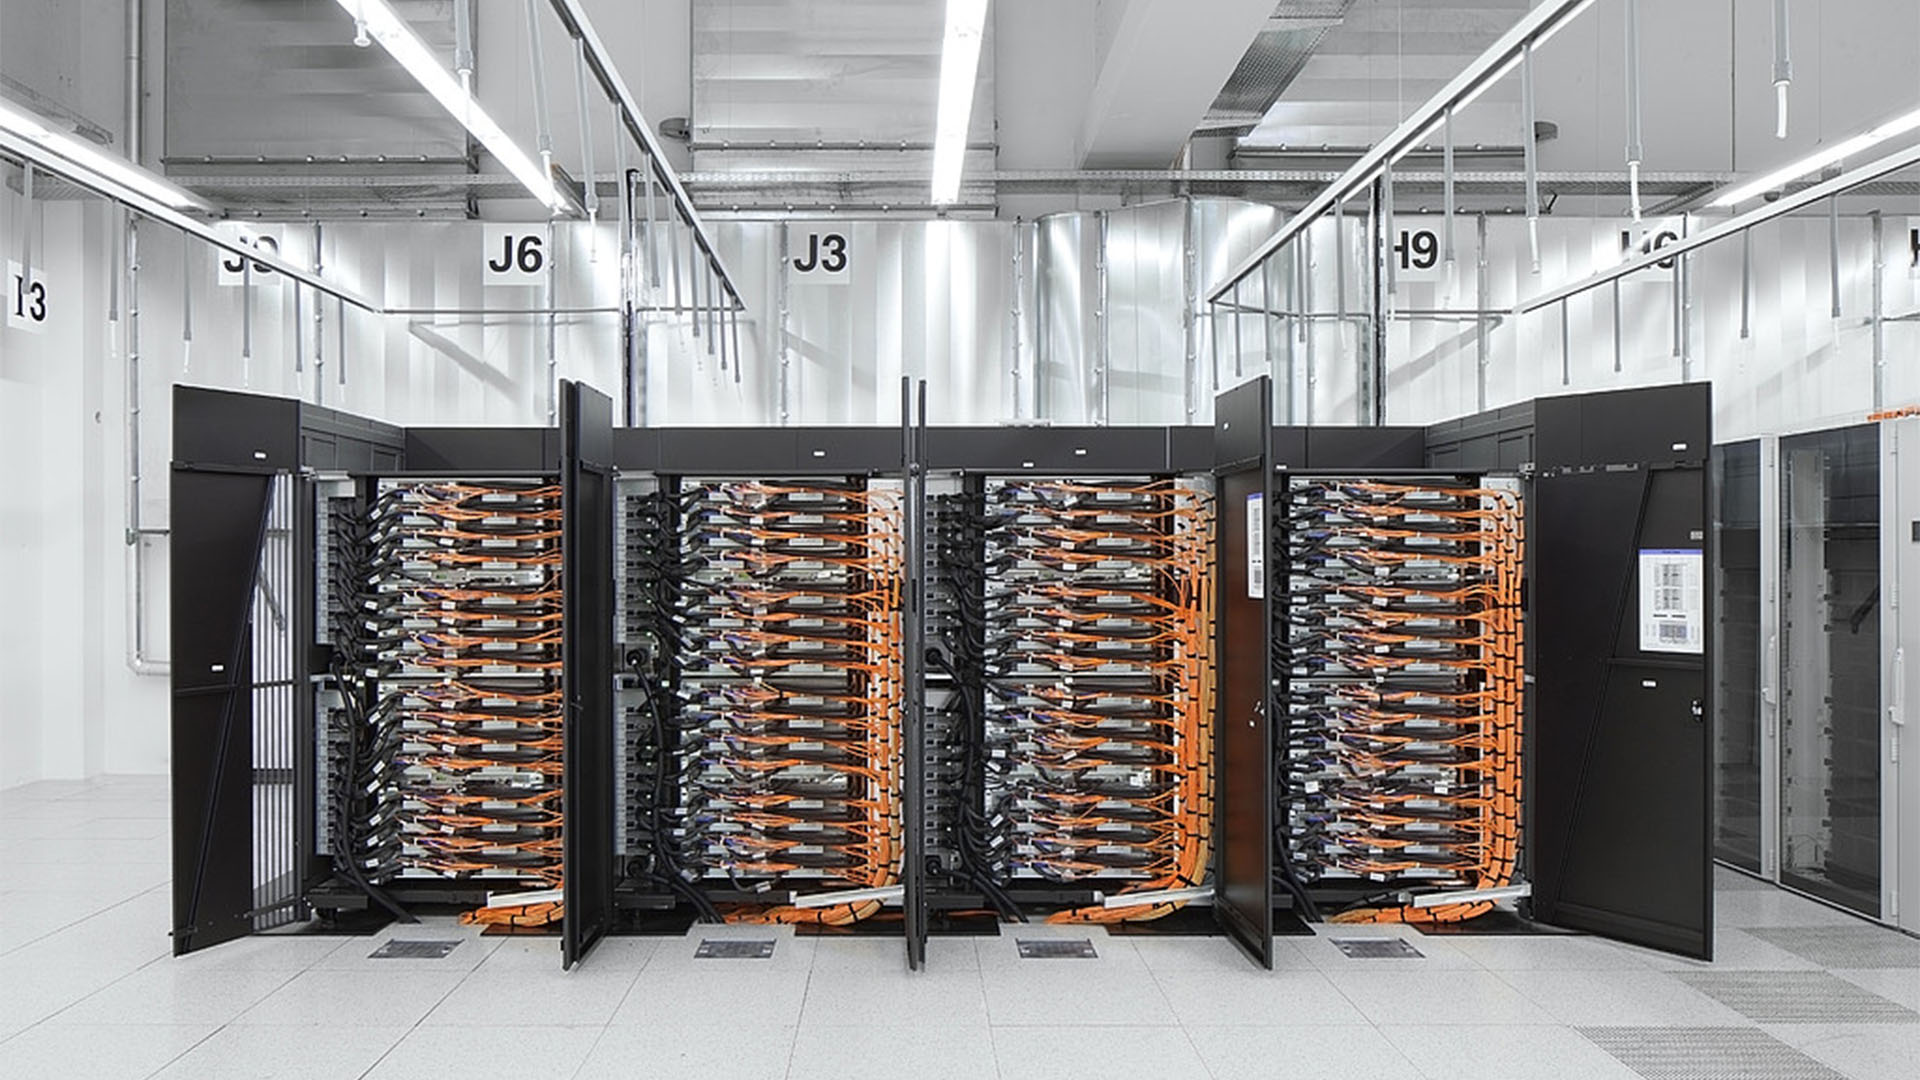 Mit seinen 19,6 Petaflops ist der Piz Daint Supercomputer der dritt schnellste offiziell betrieben Supercomputer weltweit. Vor ihm liegen nur zwei chinesische Supercomputer. (© Swiss National Supercomputing Centre)